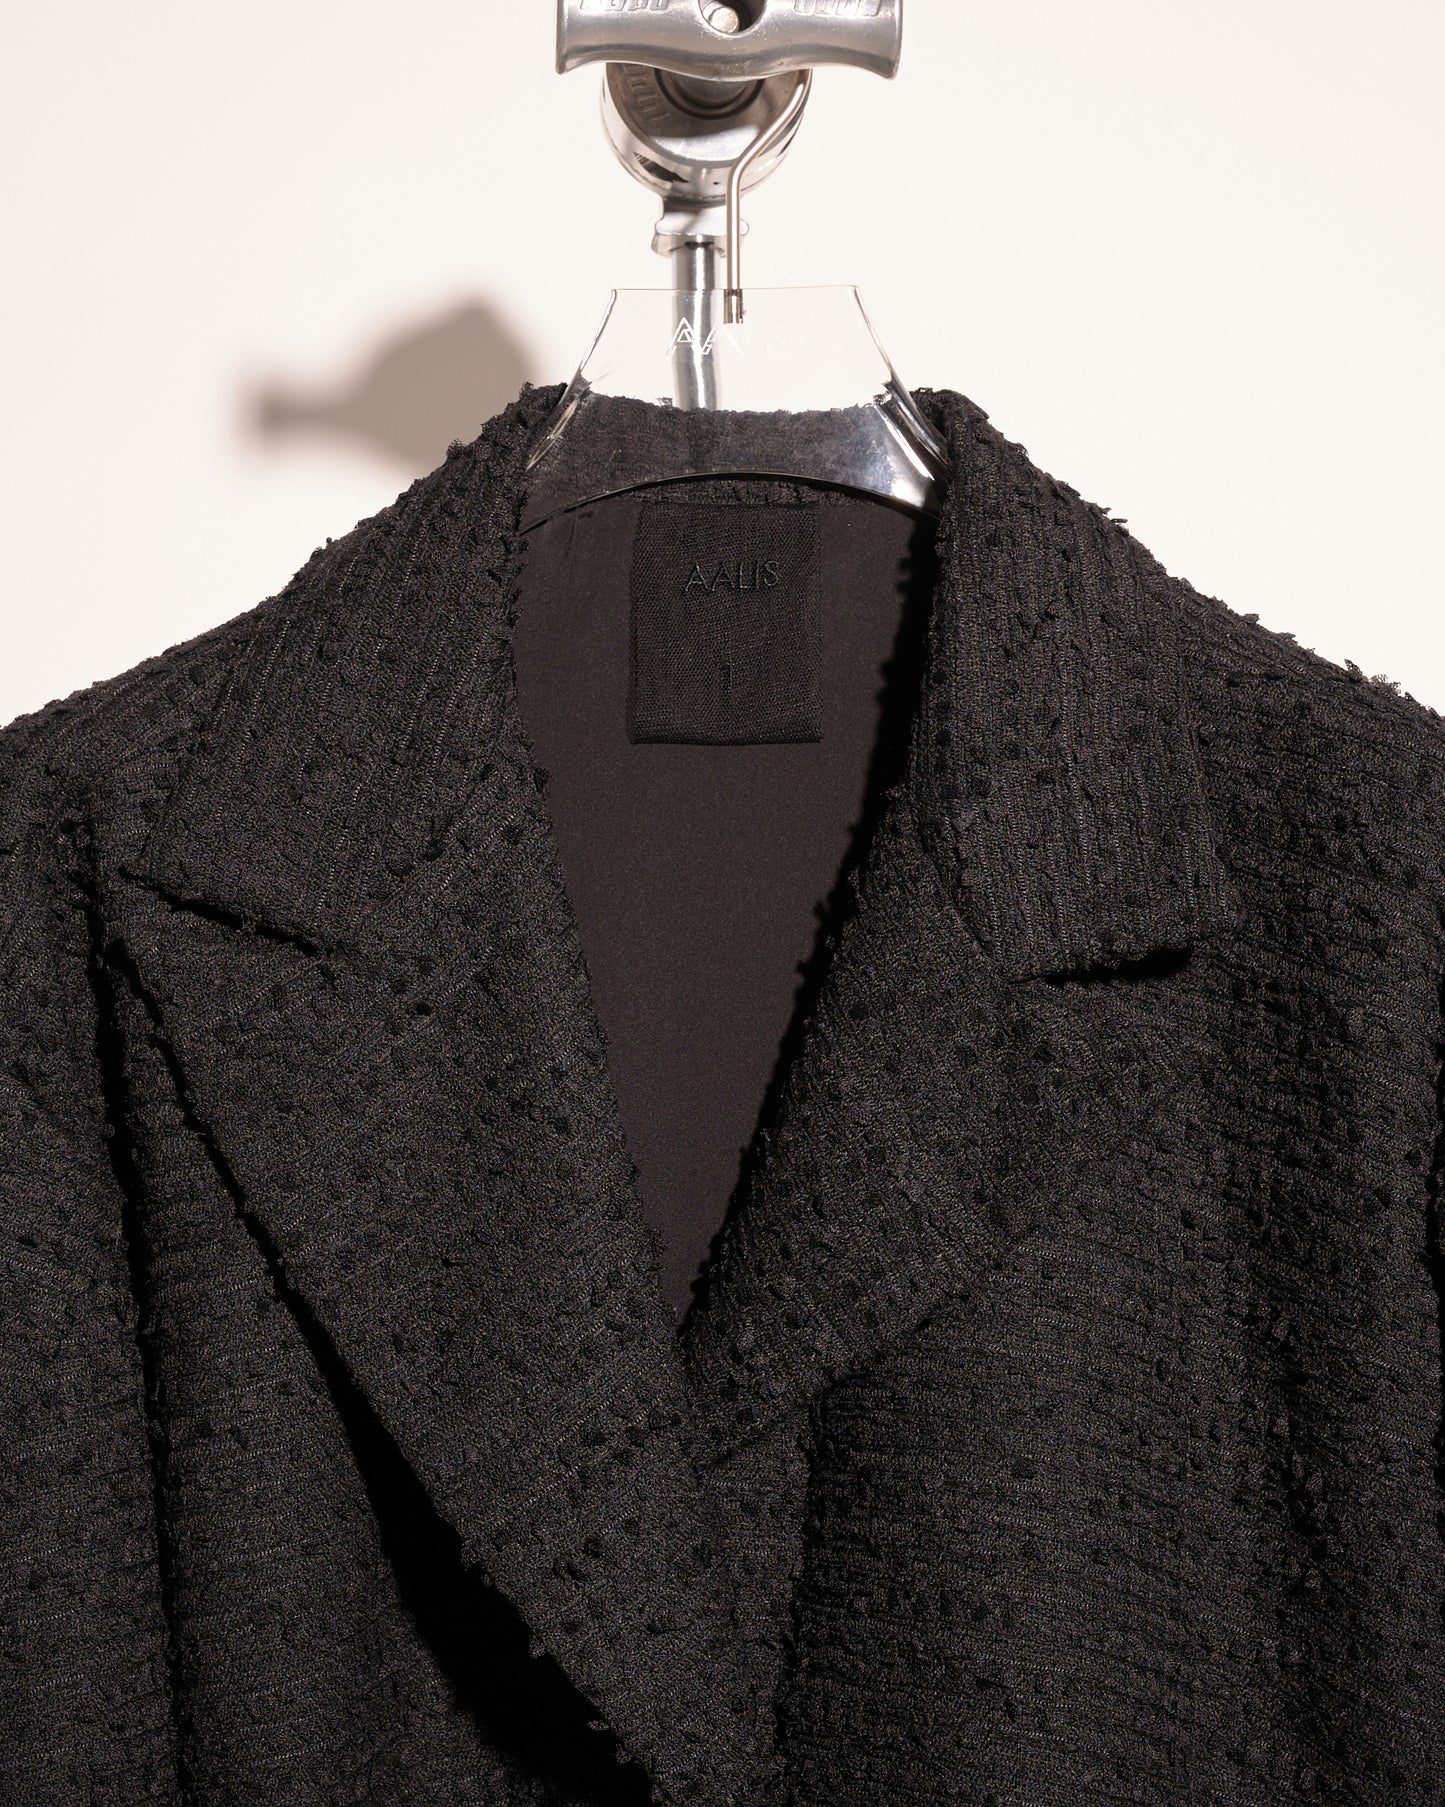 aalis FRAN Loose fit balloon sleeves tweed jacket (Black)